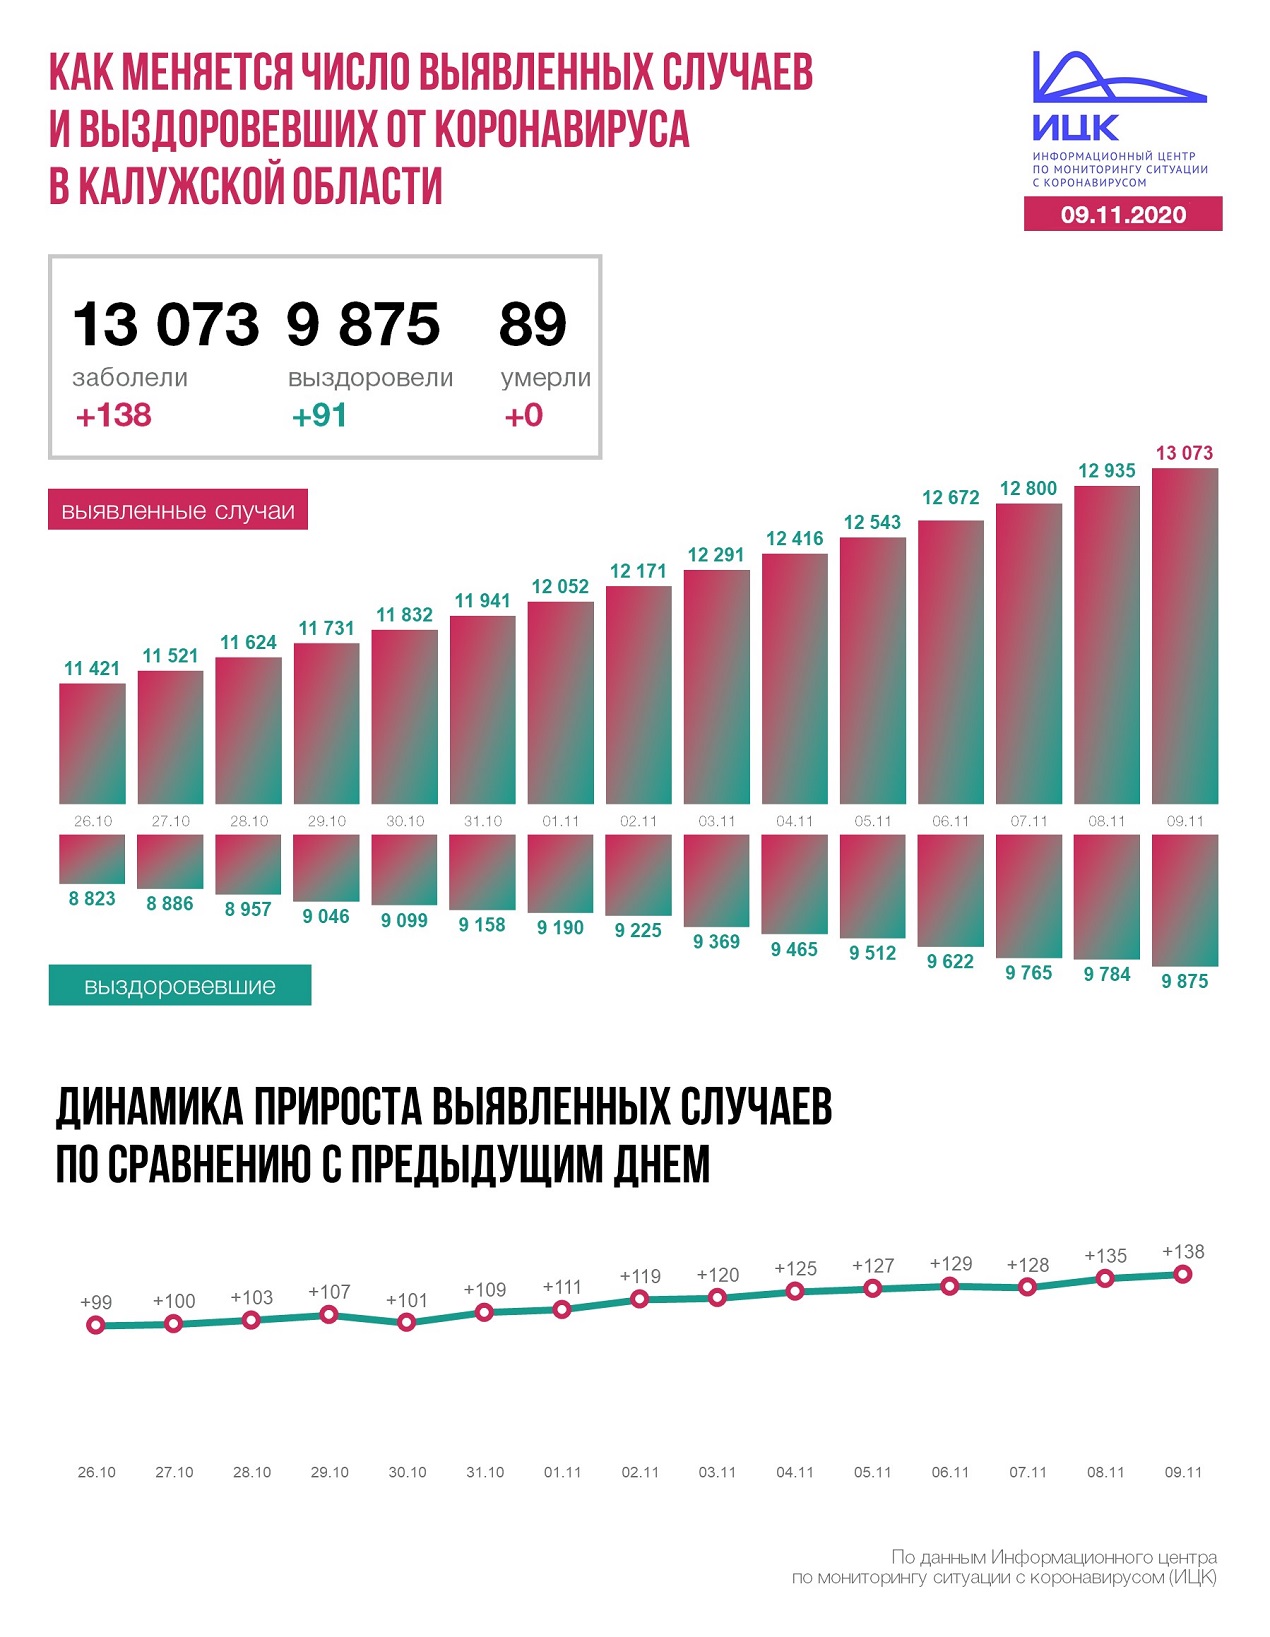 Официальные данные по коронавирусу в Калужской области на 9 ноября 2020 года.